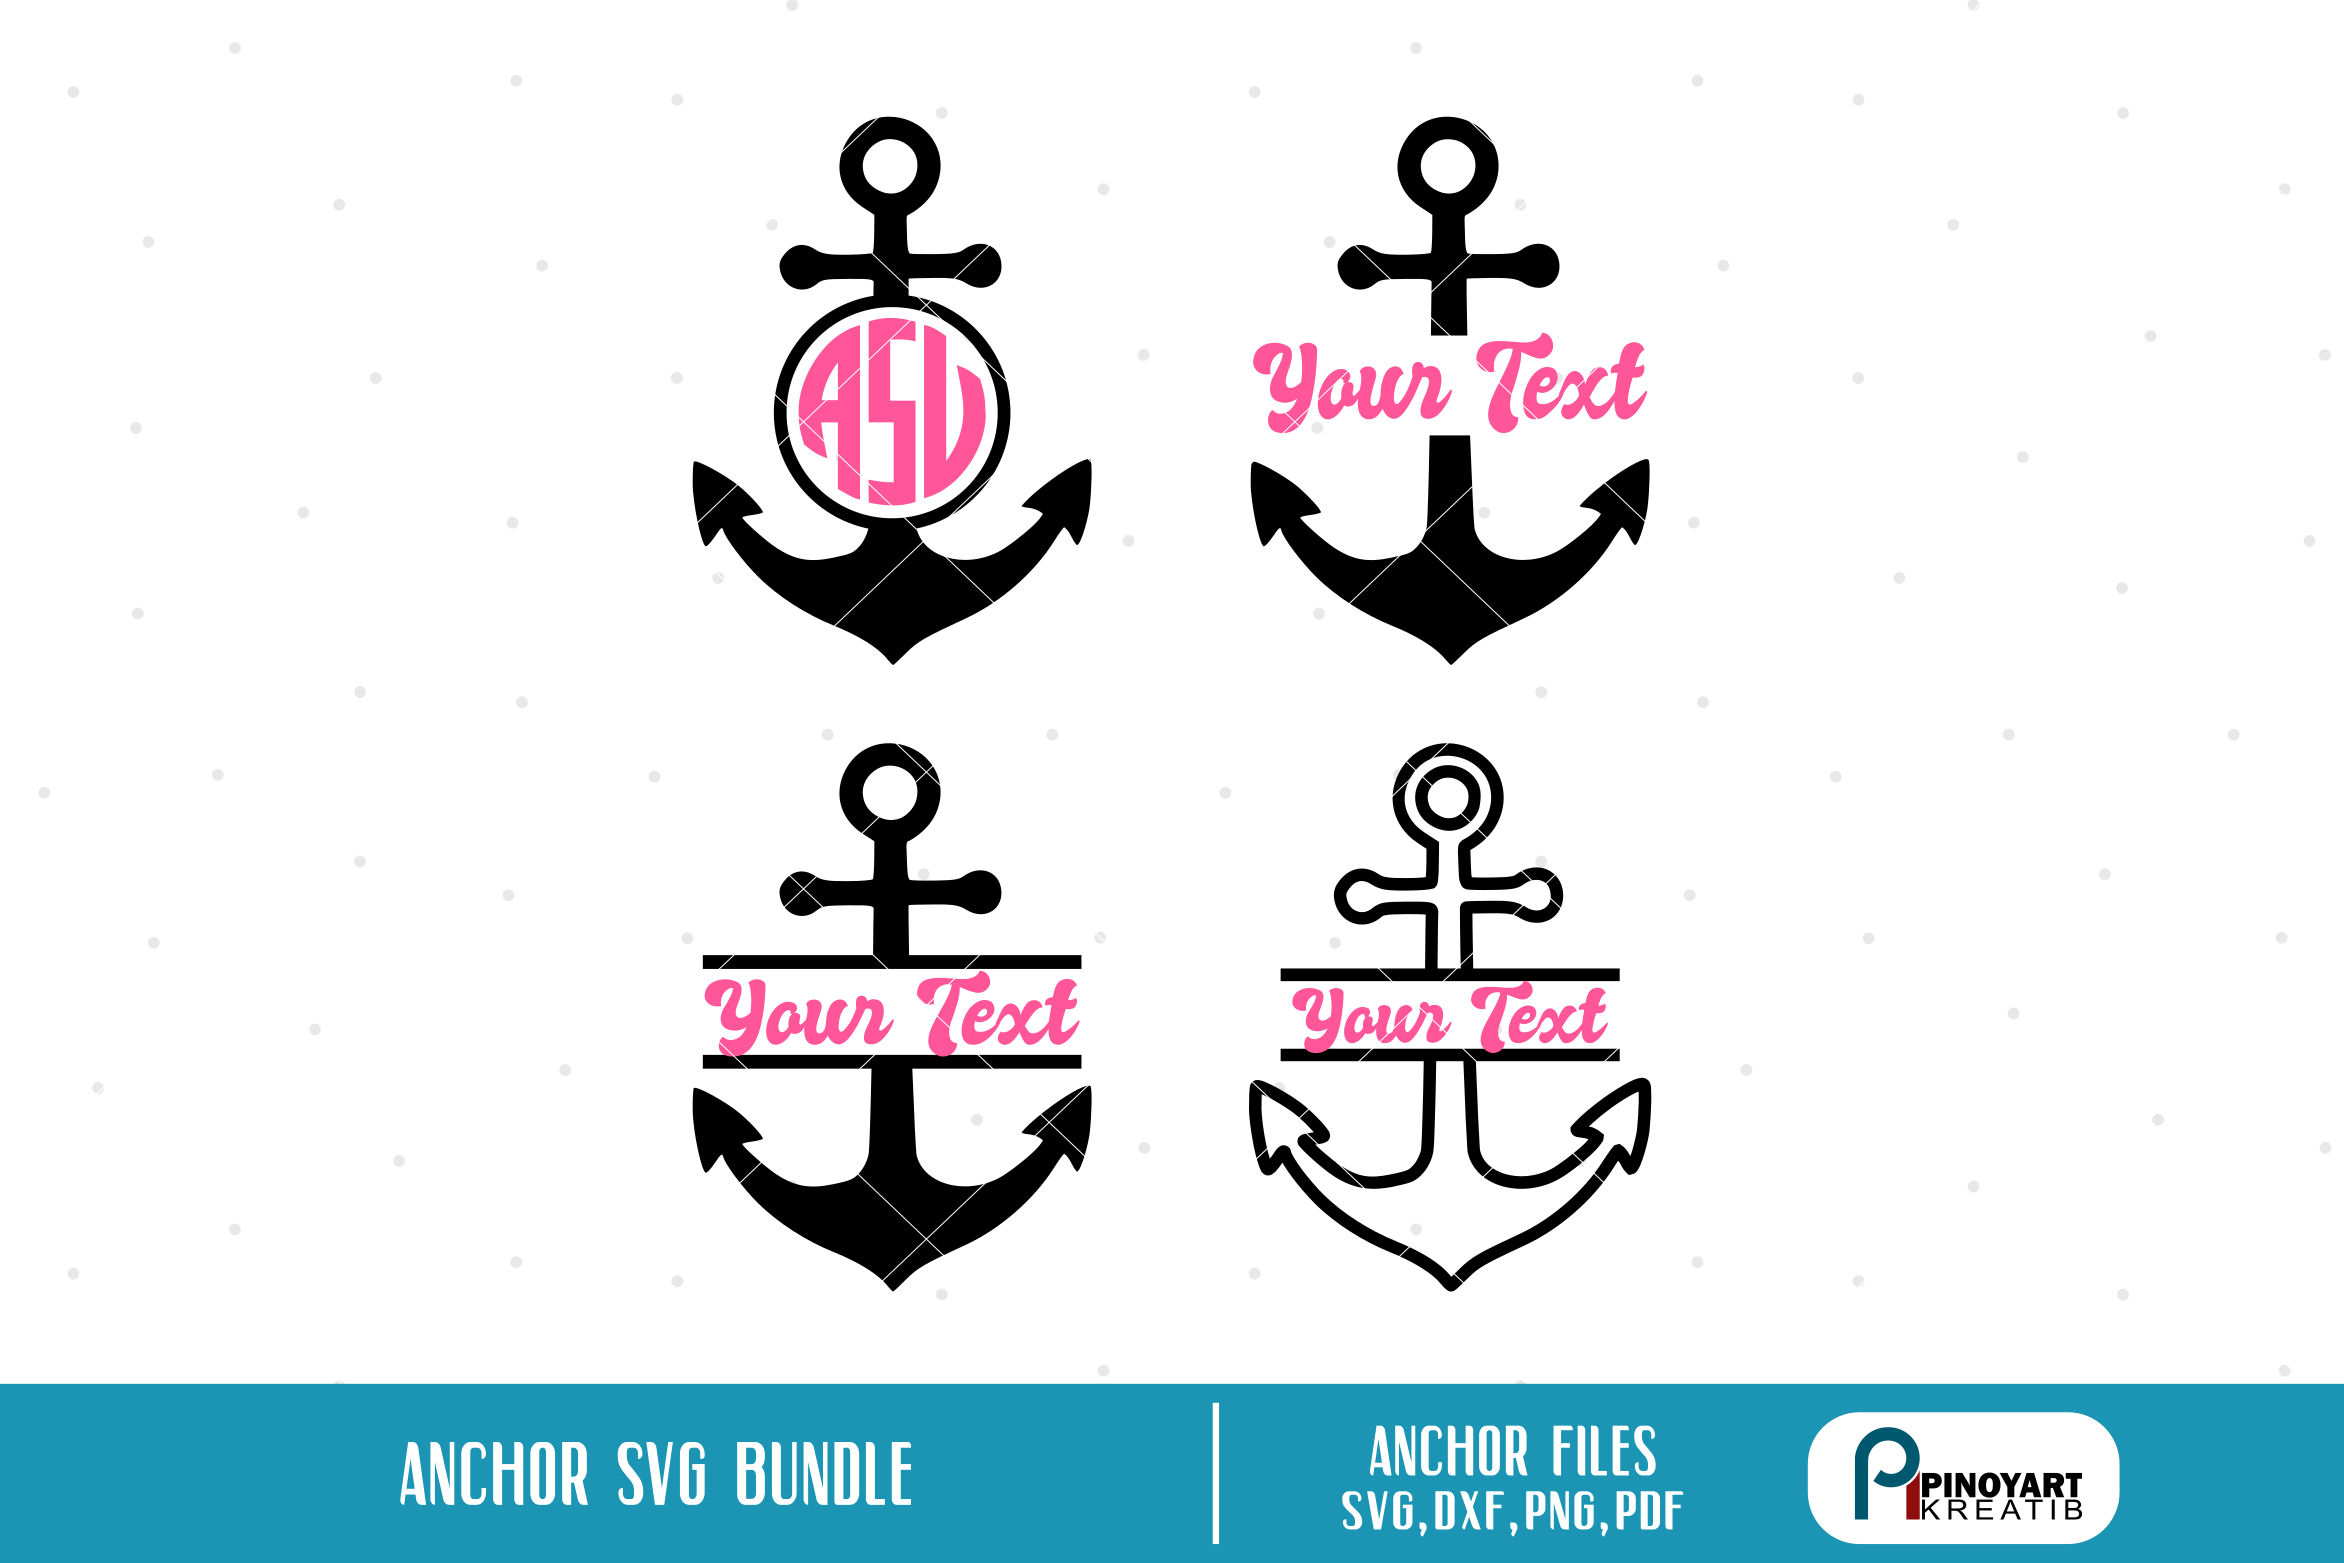 Download anchor svg,anchor svg file,anchor monogram,anchor